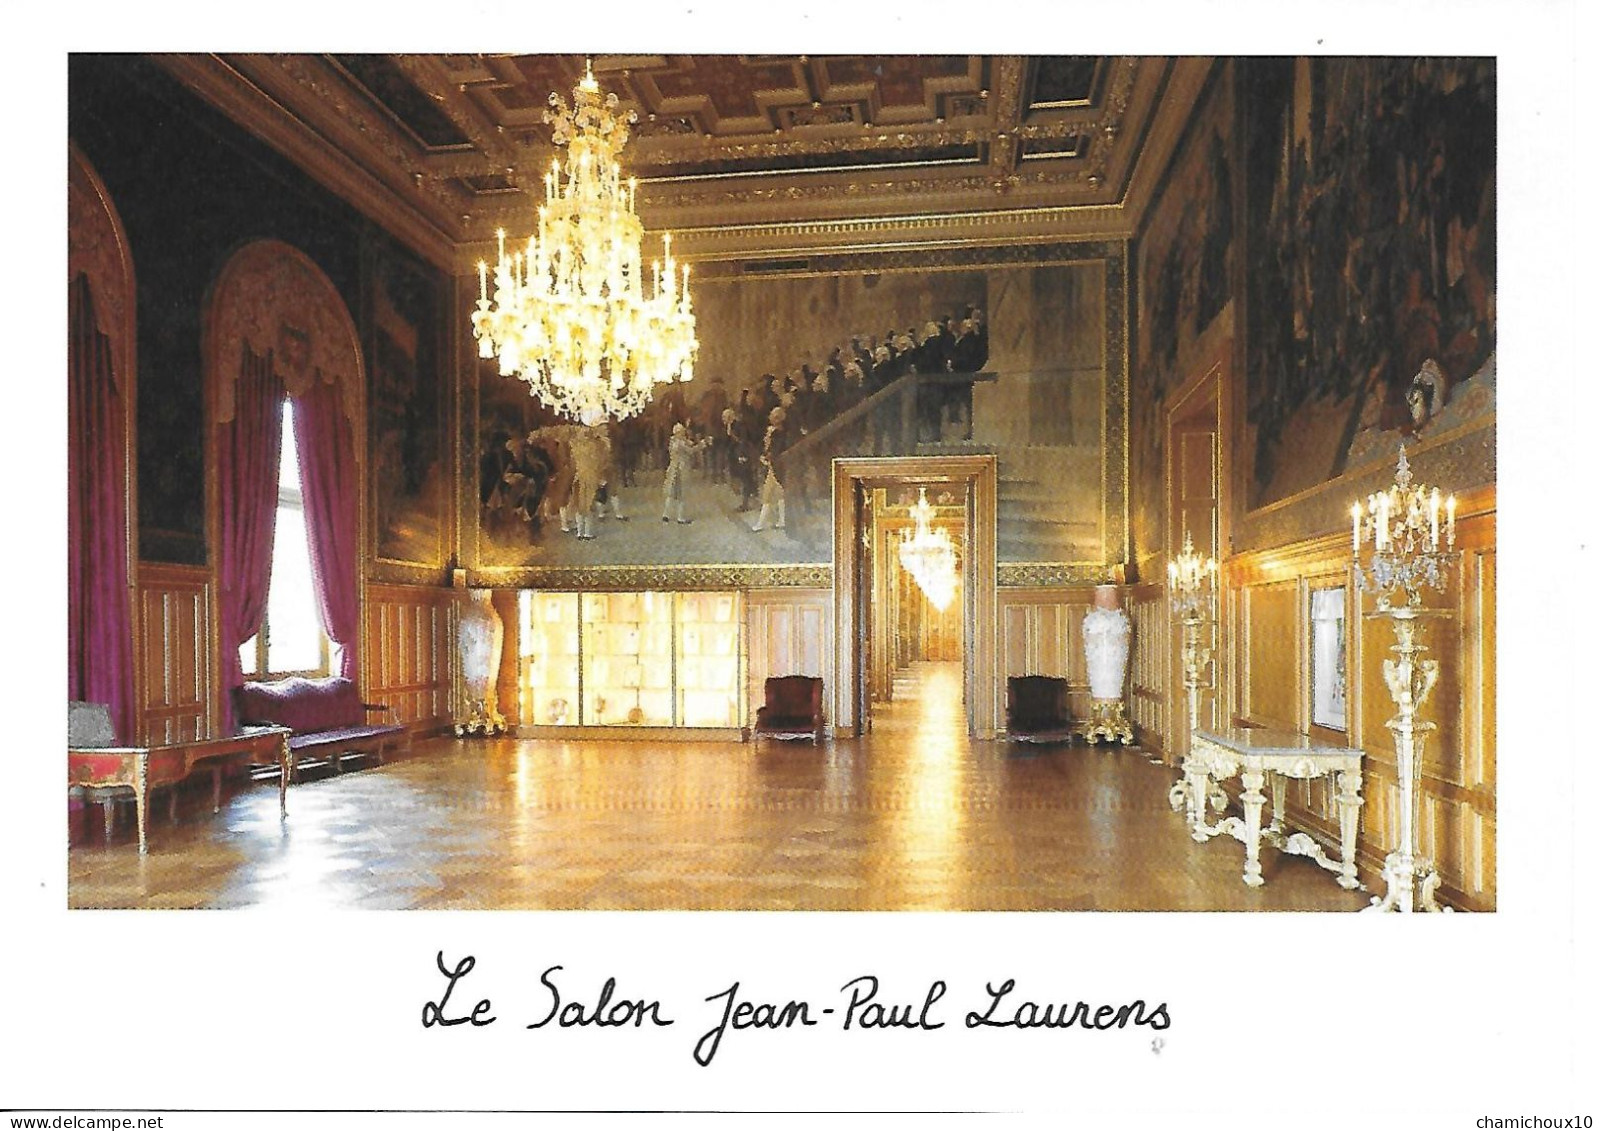 Livret Avec 5 Cp De L'hôtel De Ville De Paris-salles-salon- 15 X21cm-HISTOIRE De L'Hôtel De Ville-de Jean Tibery Maire - Storia